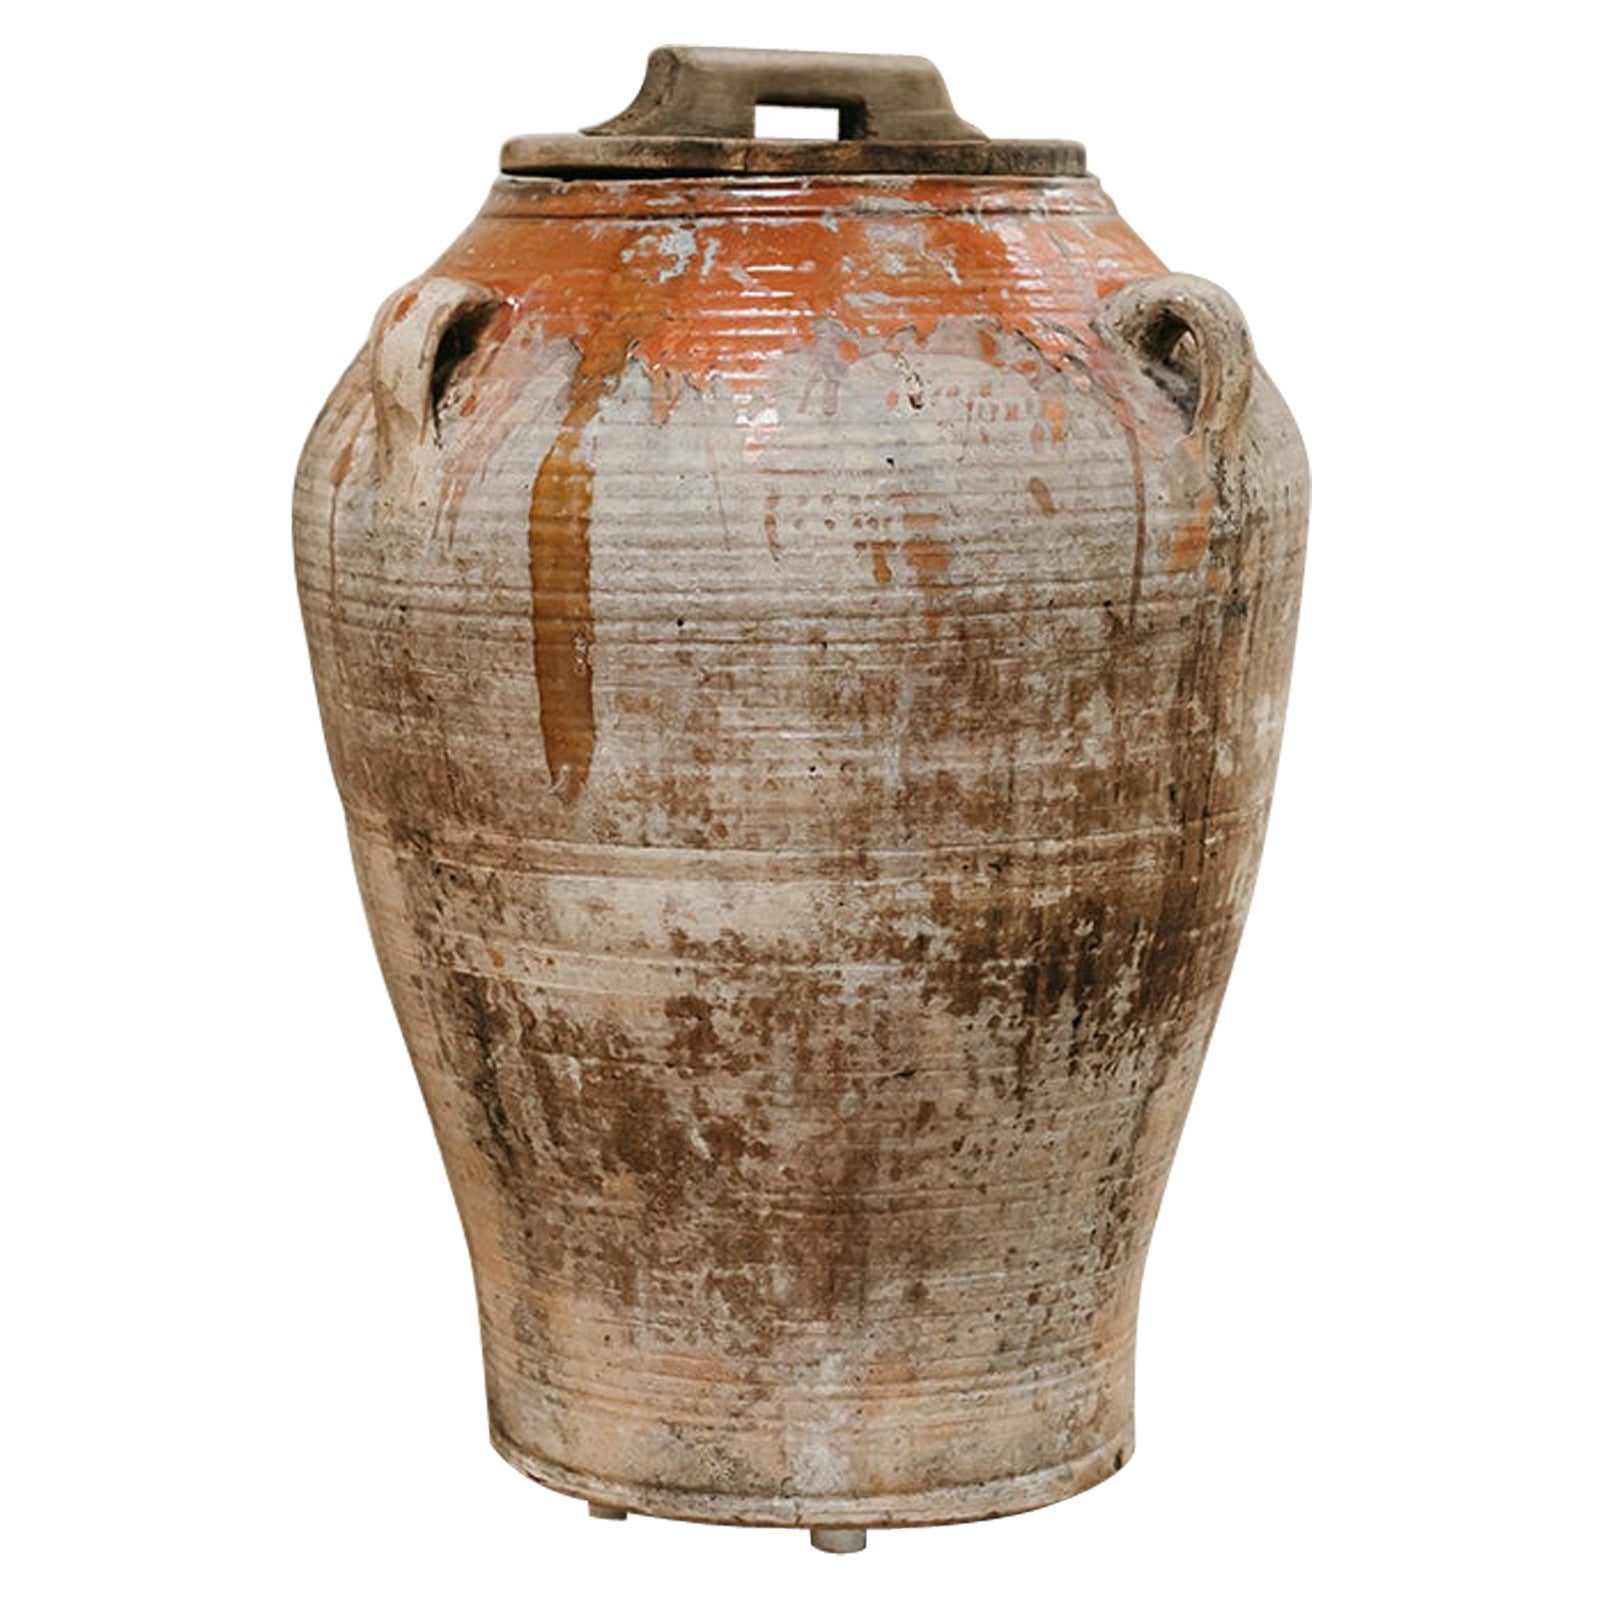 Jarre/urne à huile d'olive en terre cuite vernissée du 19e siècle 